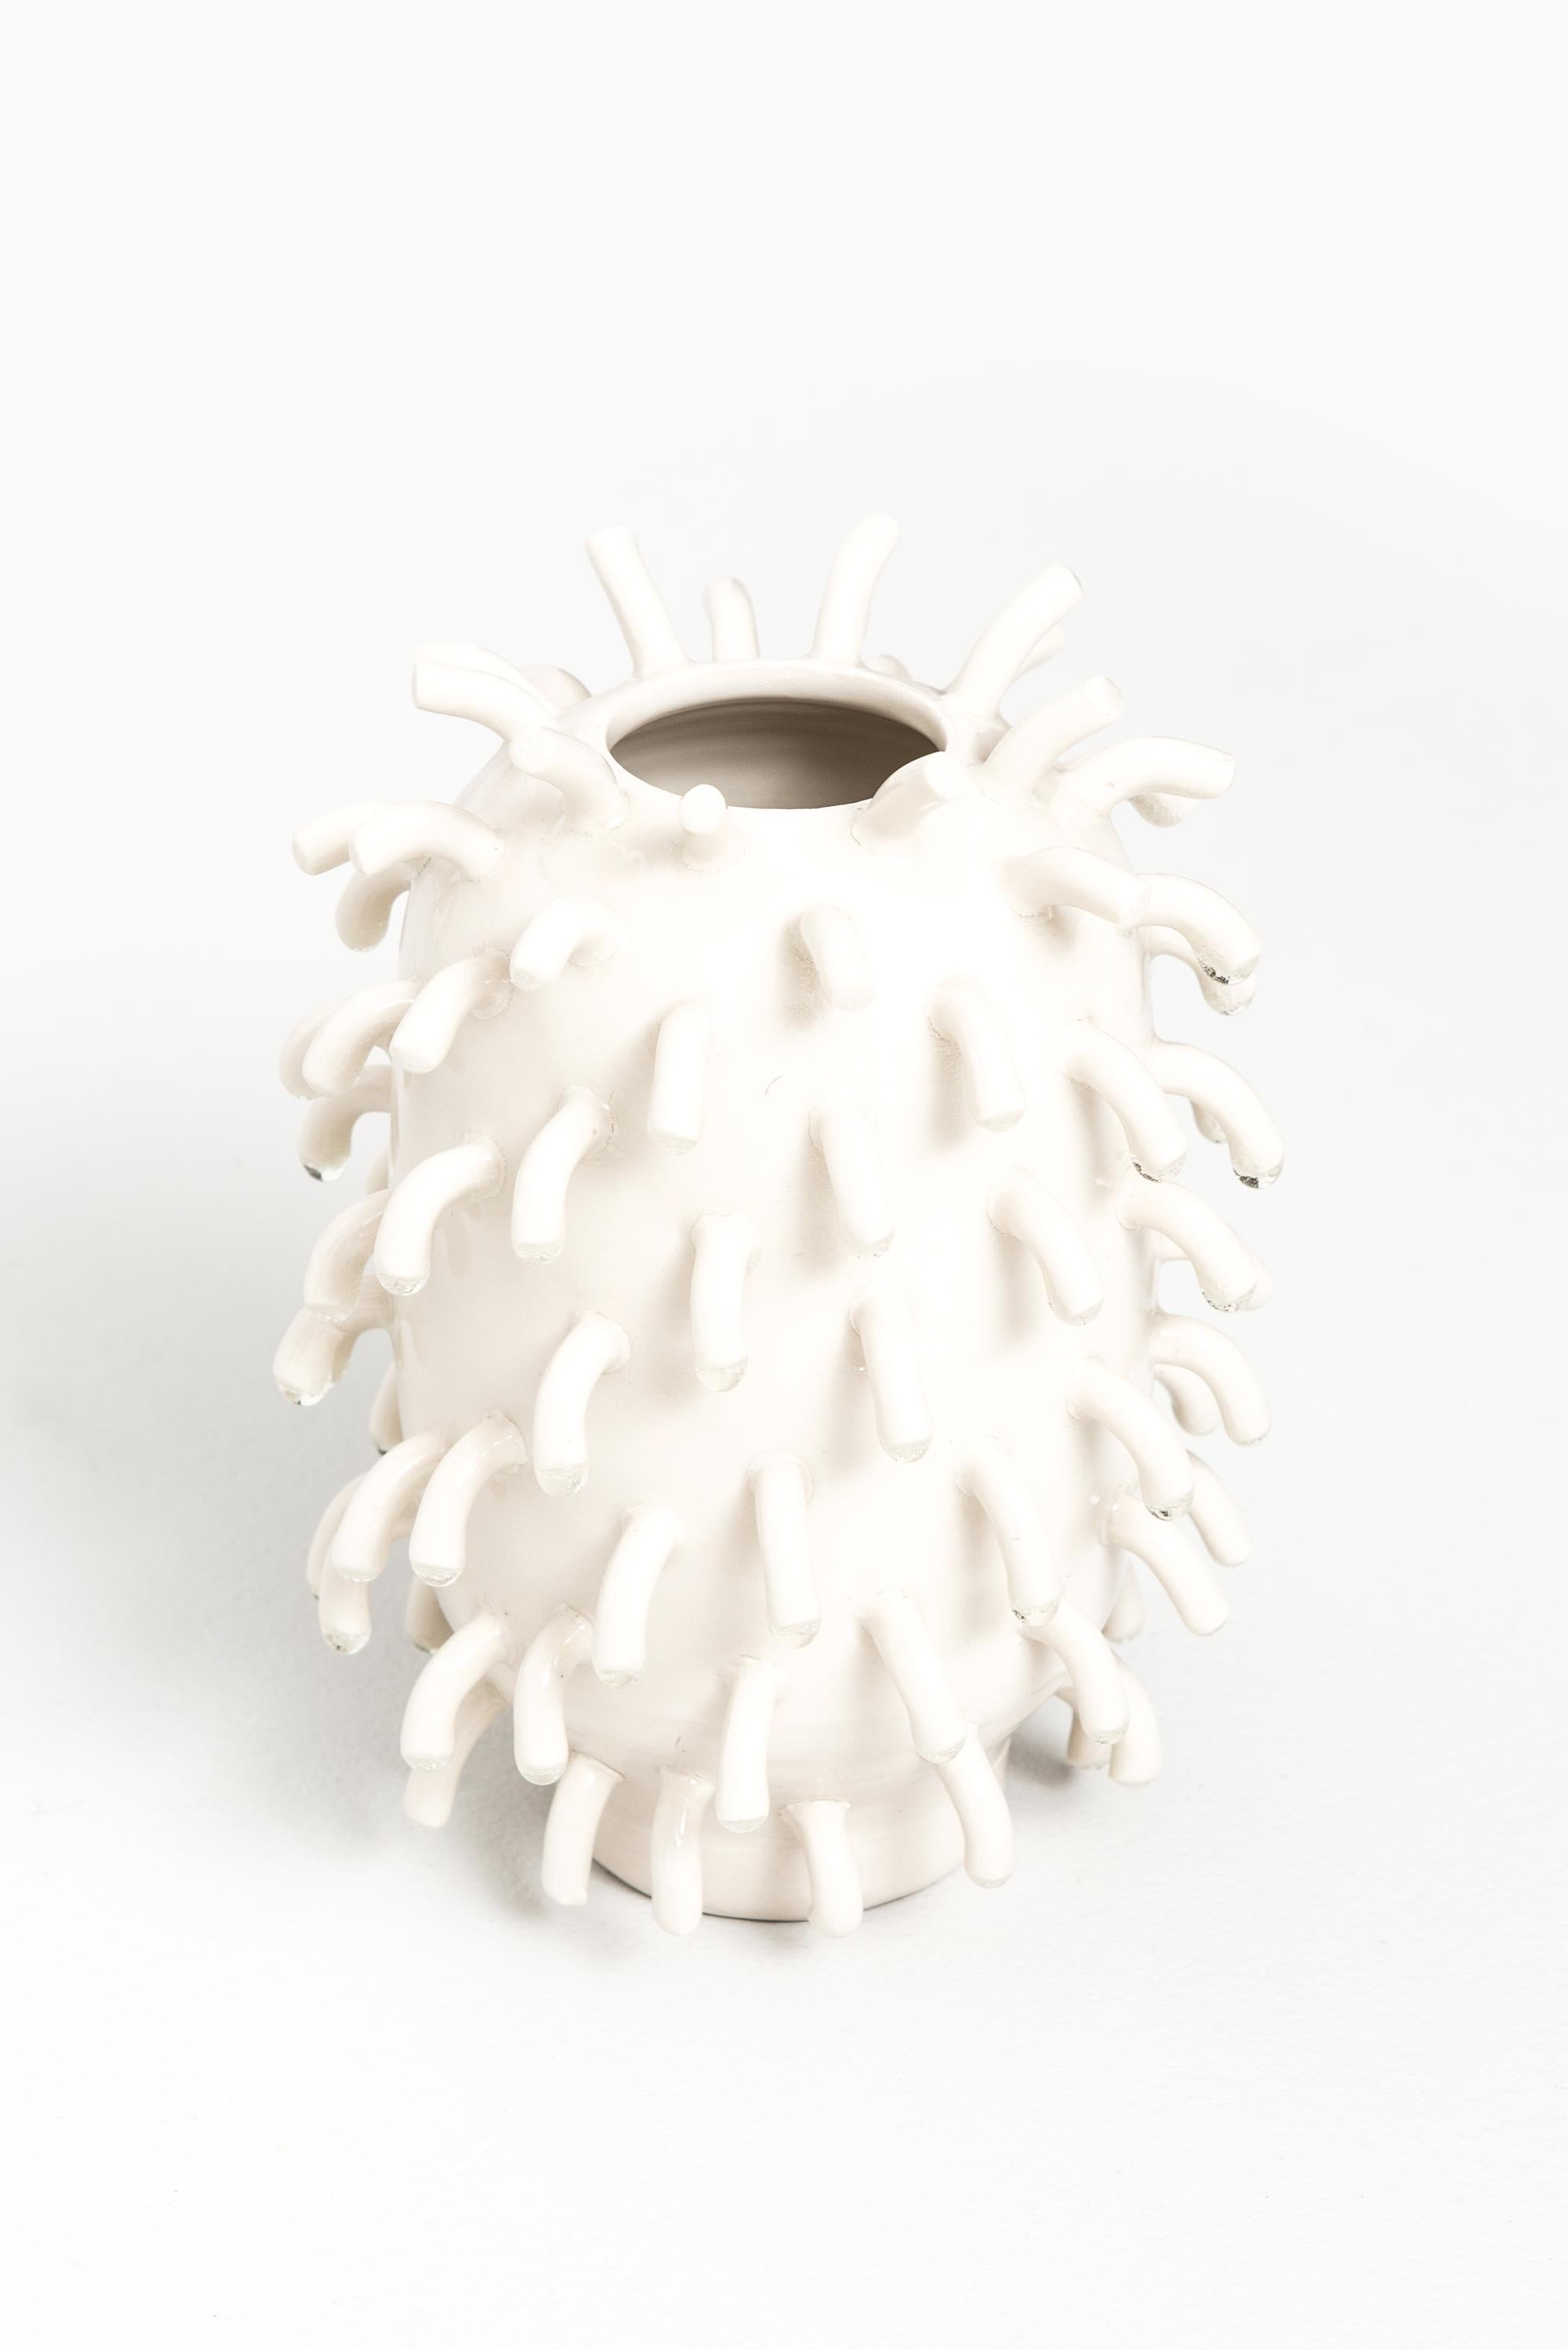 Mårten Medbo Ceramic Vase Model Hairy In Good Condition For Sale In Limhamn, Skåne län